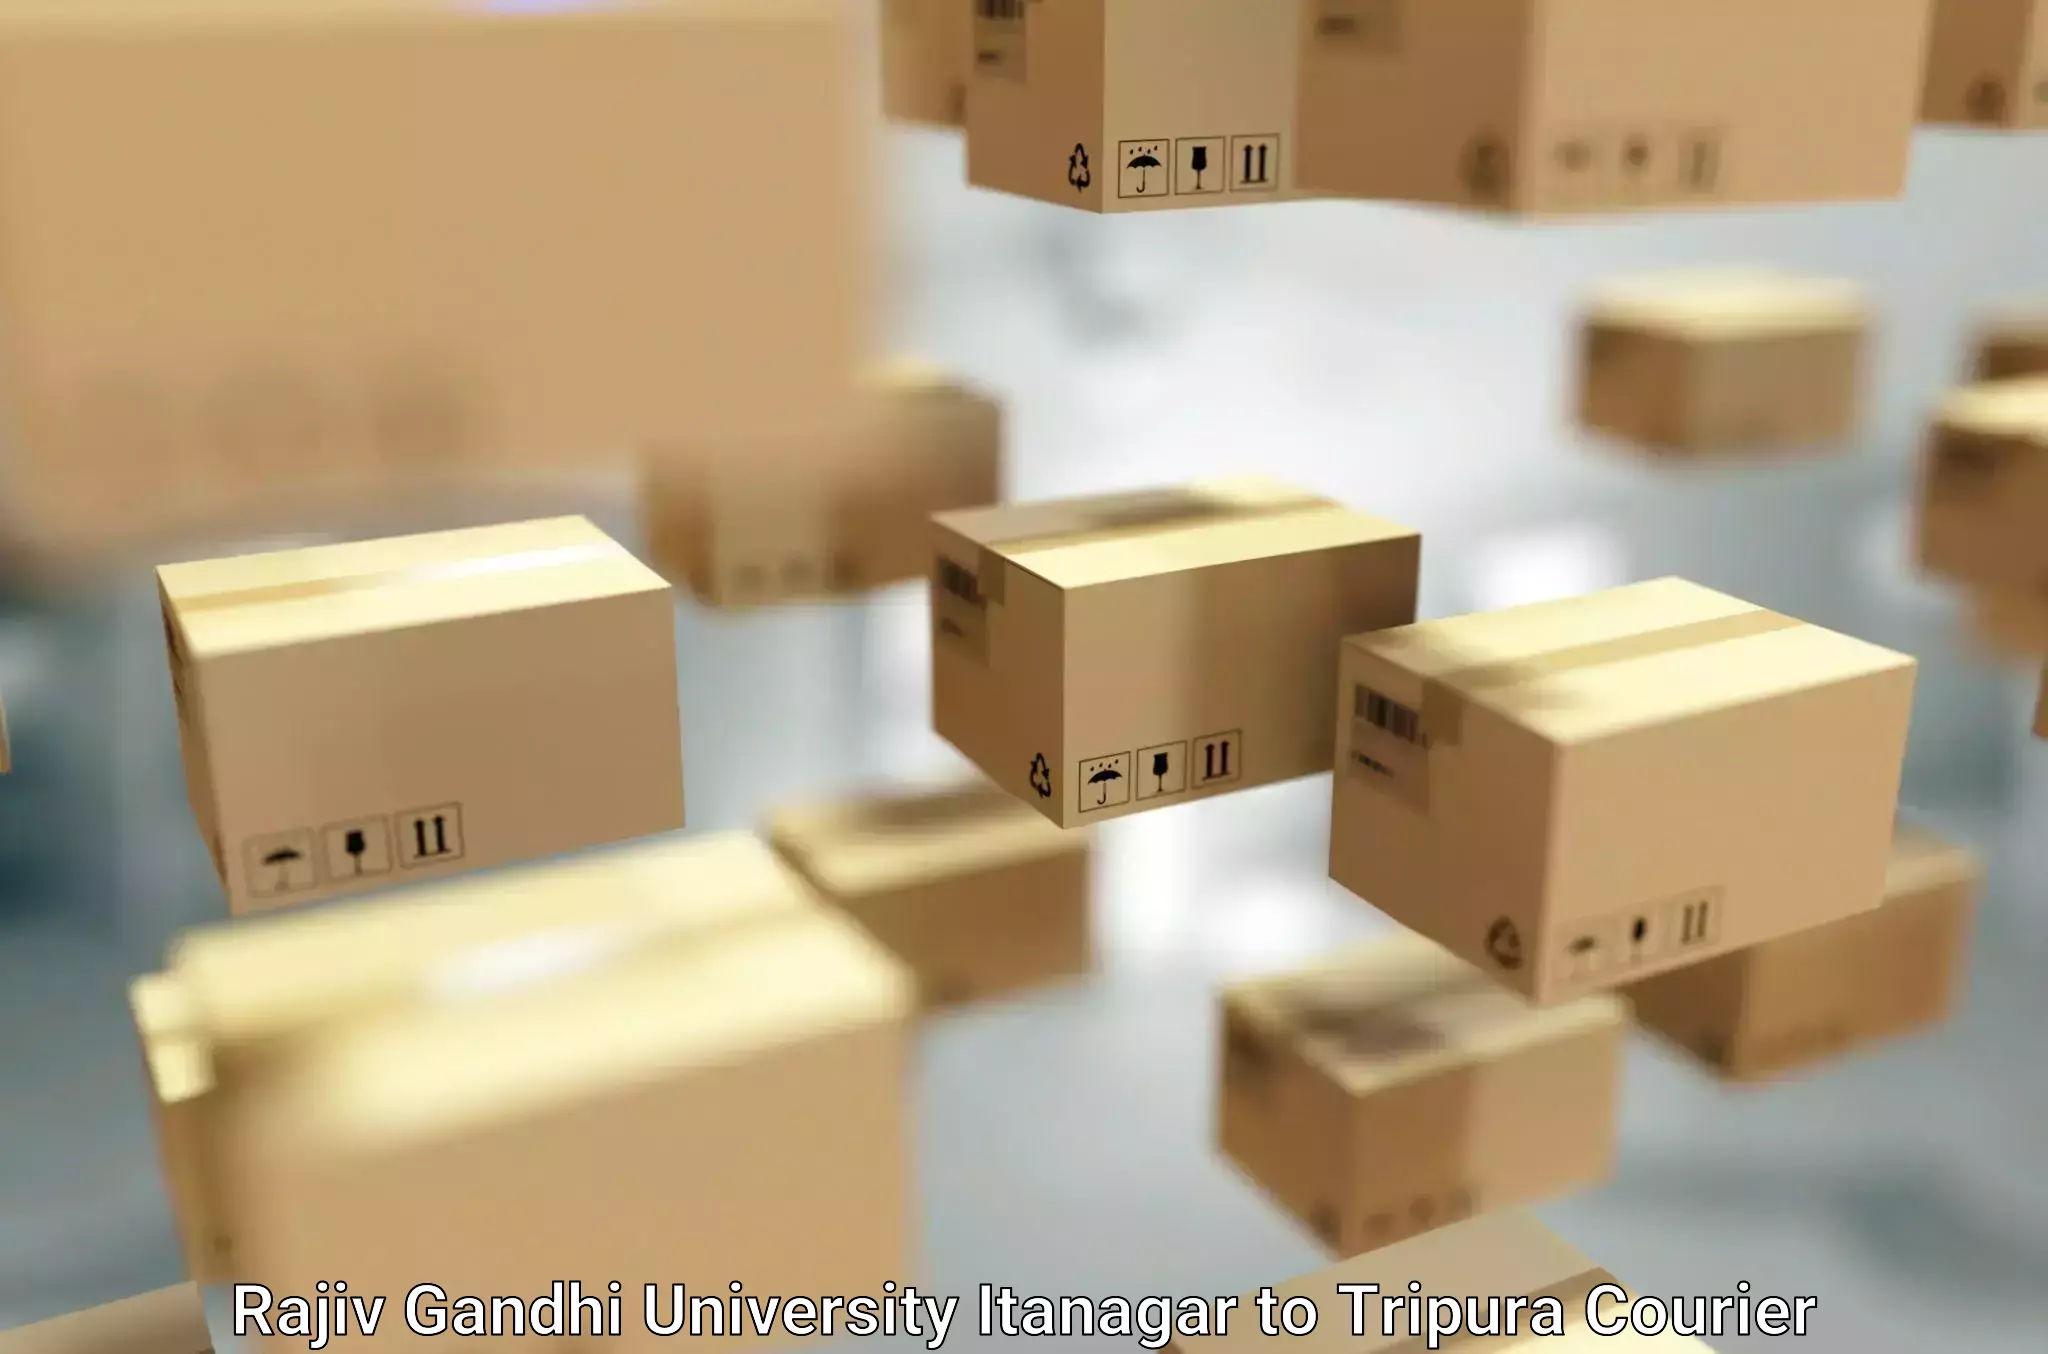 Furniture moving plans Rajiv Gandhi University Itanagar to Aambasa